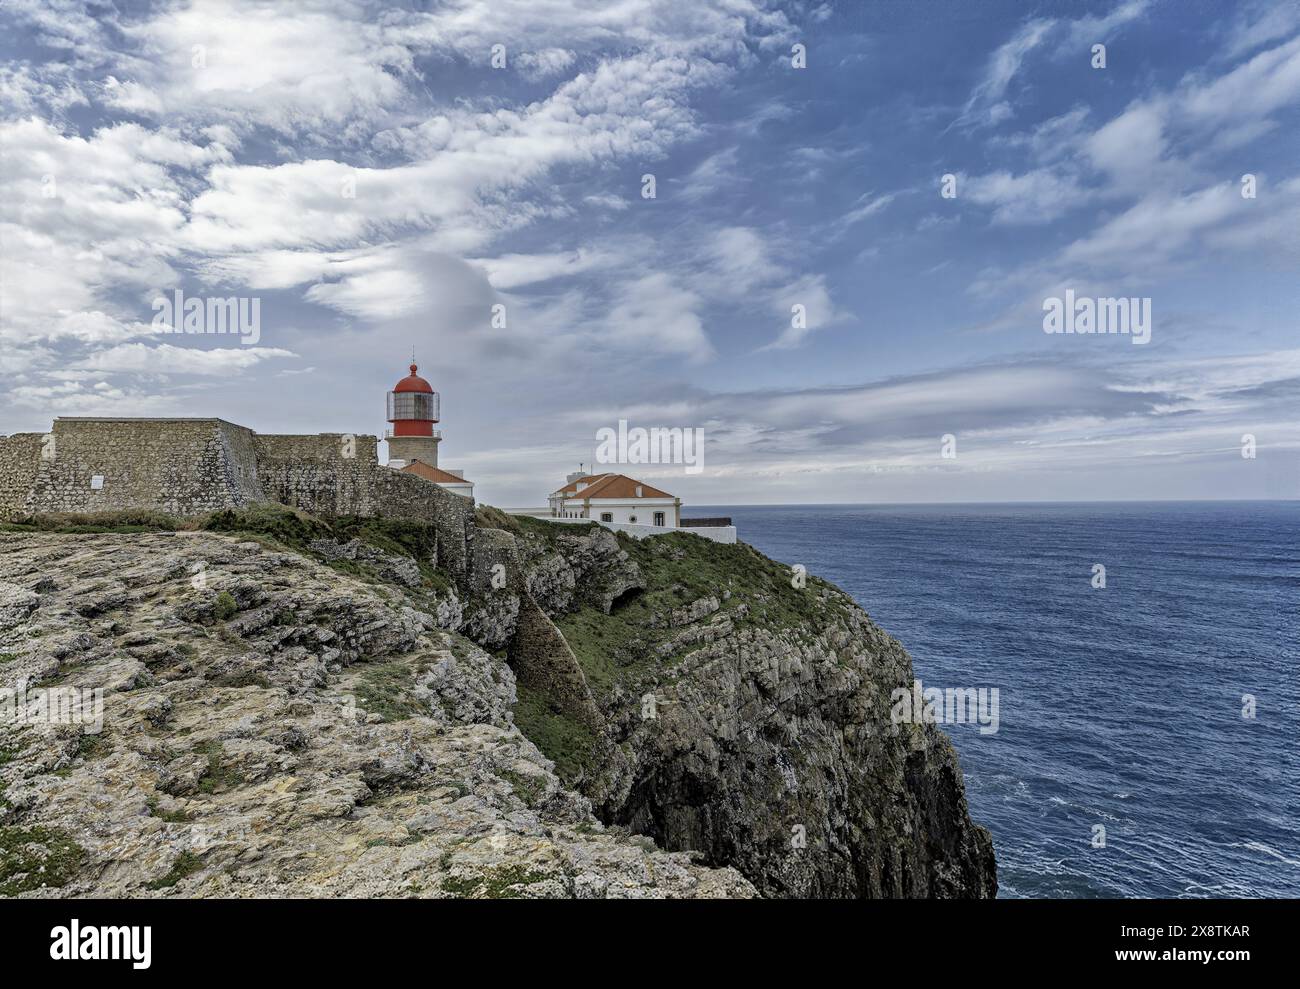 Der berühmte Leuchtturm Saint Vincent thront auf den felsigen Klippen des Cabo de Sao Vicente in Portugal. Stockfoto